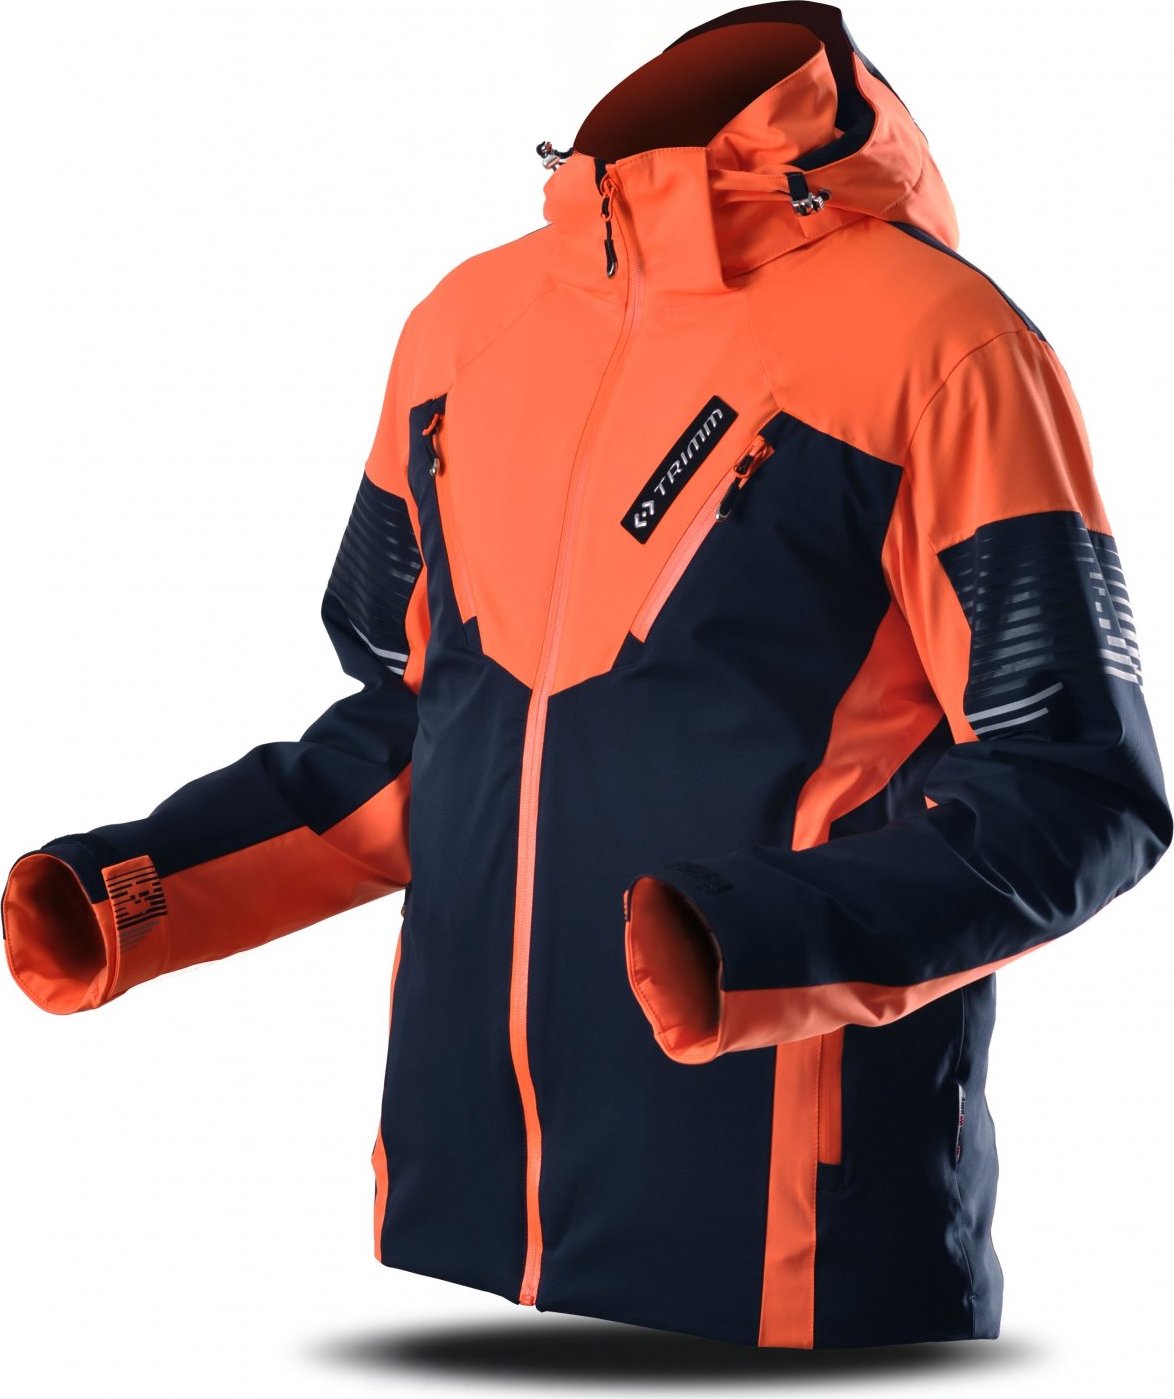 Pánská lyžařská bunda TRIMM Avalon dark blue/signal orange Velikost: S, Barva: dark blue/signal orange